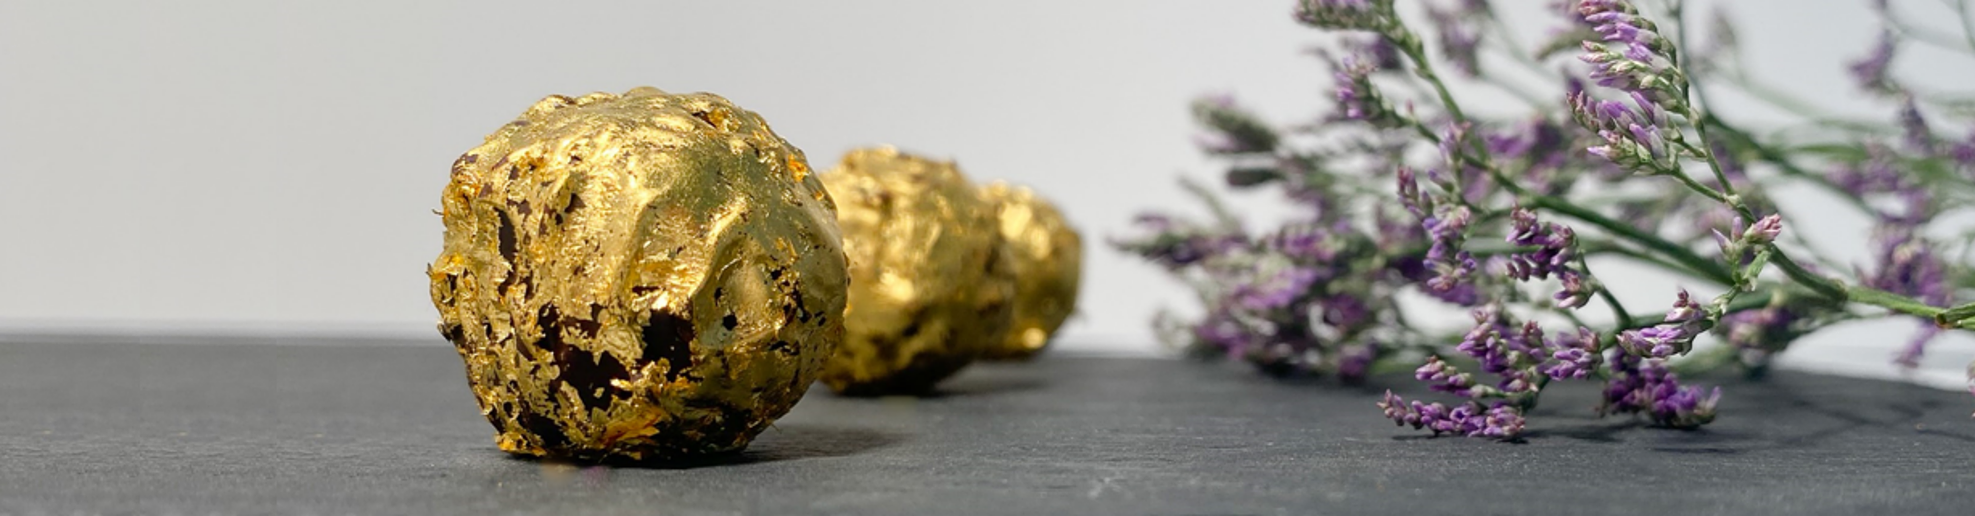 Chocolats recouverts de feuilles d'or - 25 feuilles d'or comestible -  Delafee